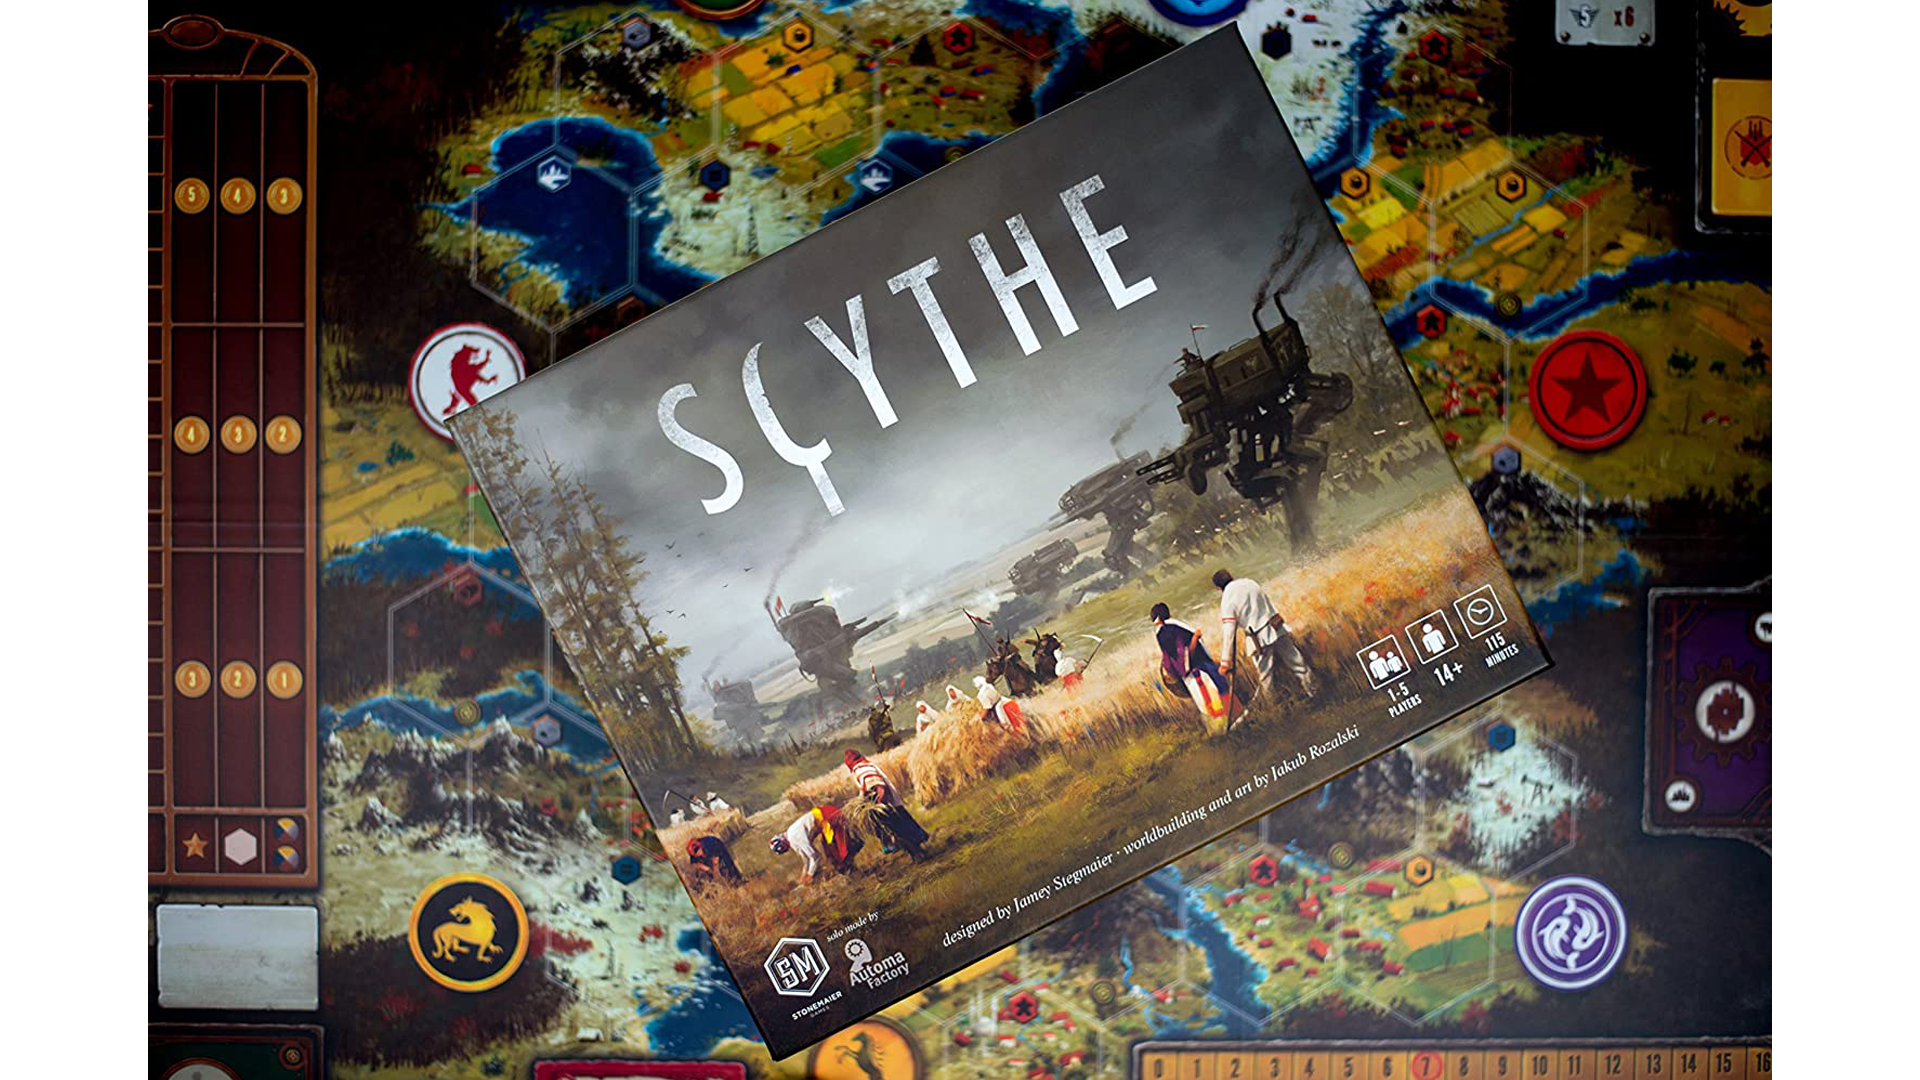 Vue de haut en bas du jeu "Scythe", avec le plateau de jeu et d